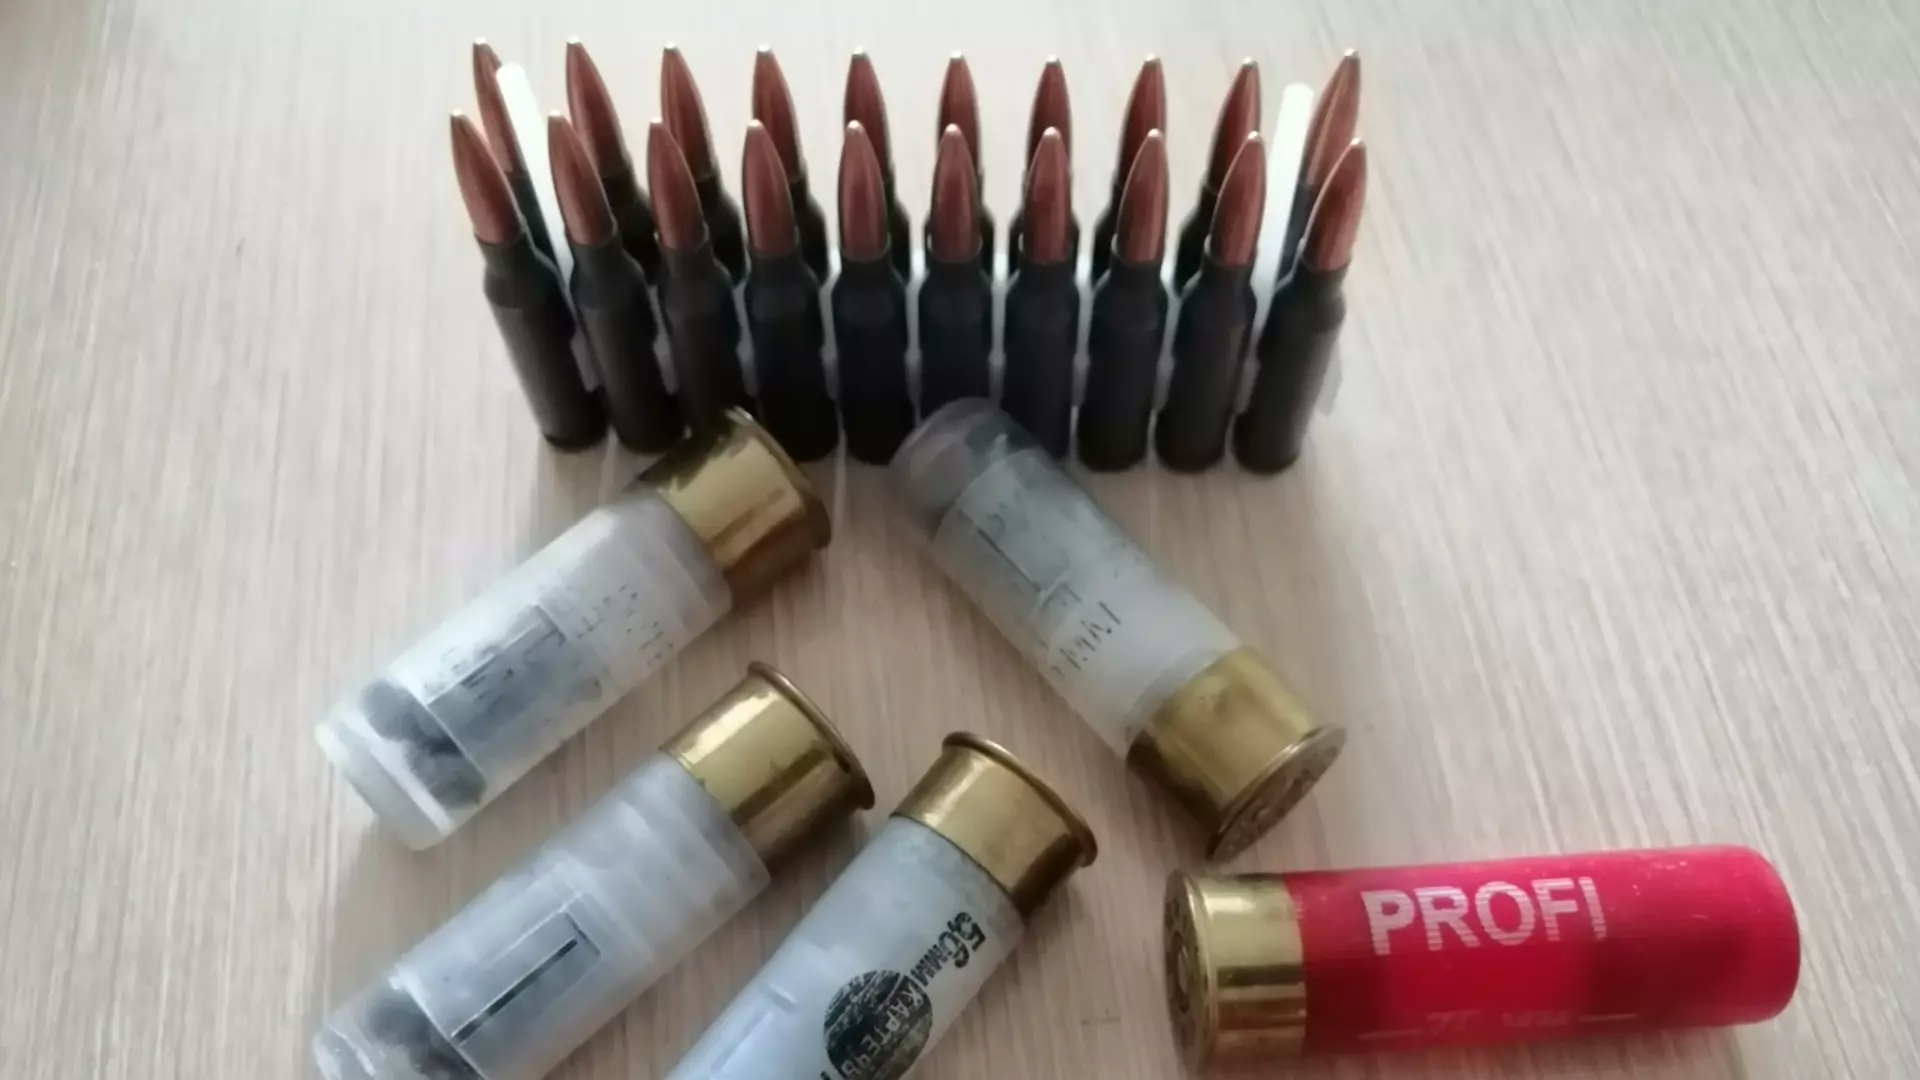 Жителя Удмуртии осудили за хранение взрывчатки и изготовление боеприпасов